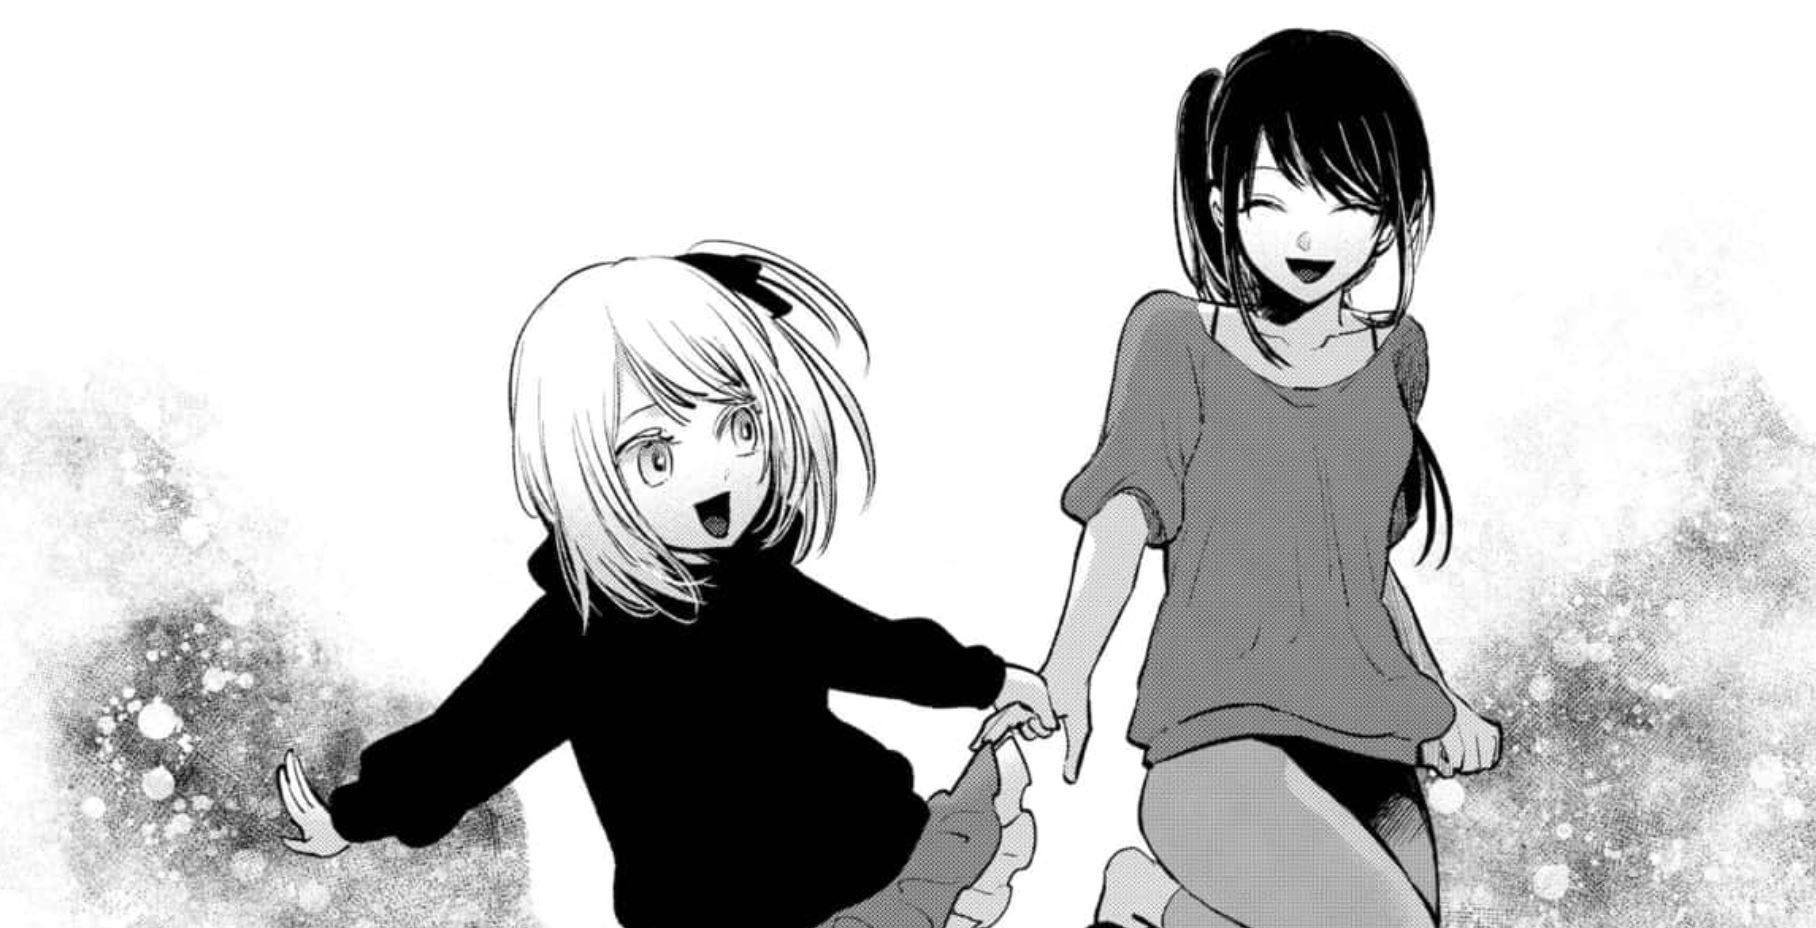 Tsukuyomi and Ruby as seen in the manga (Image via Shueisha)